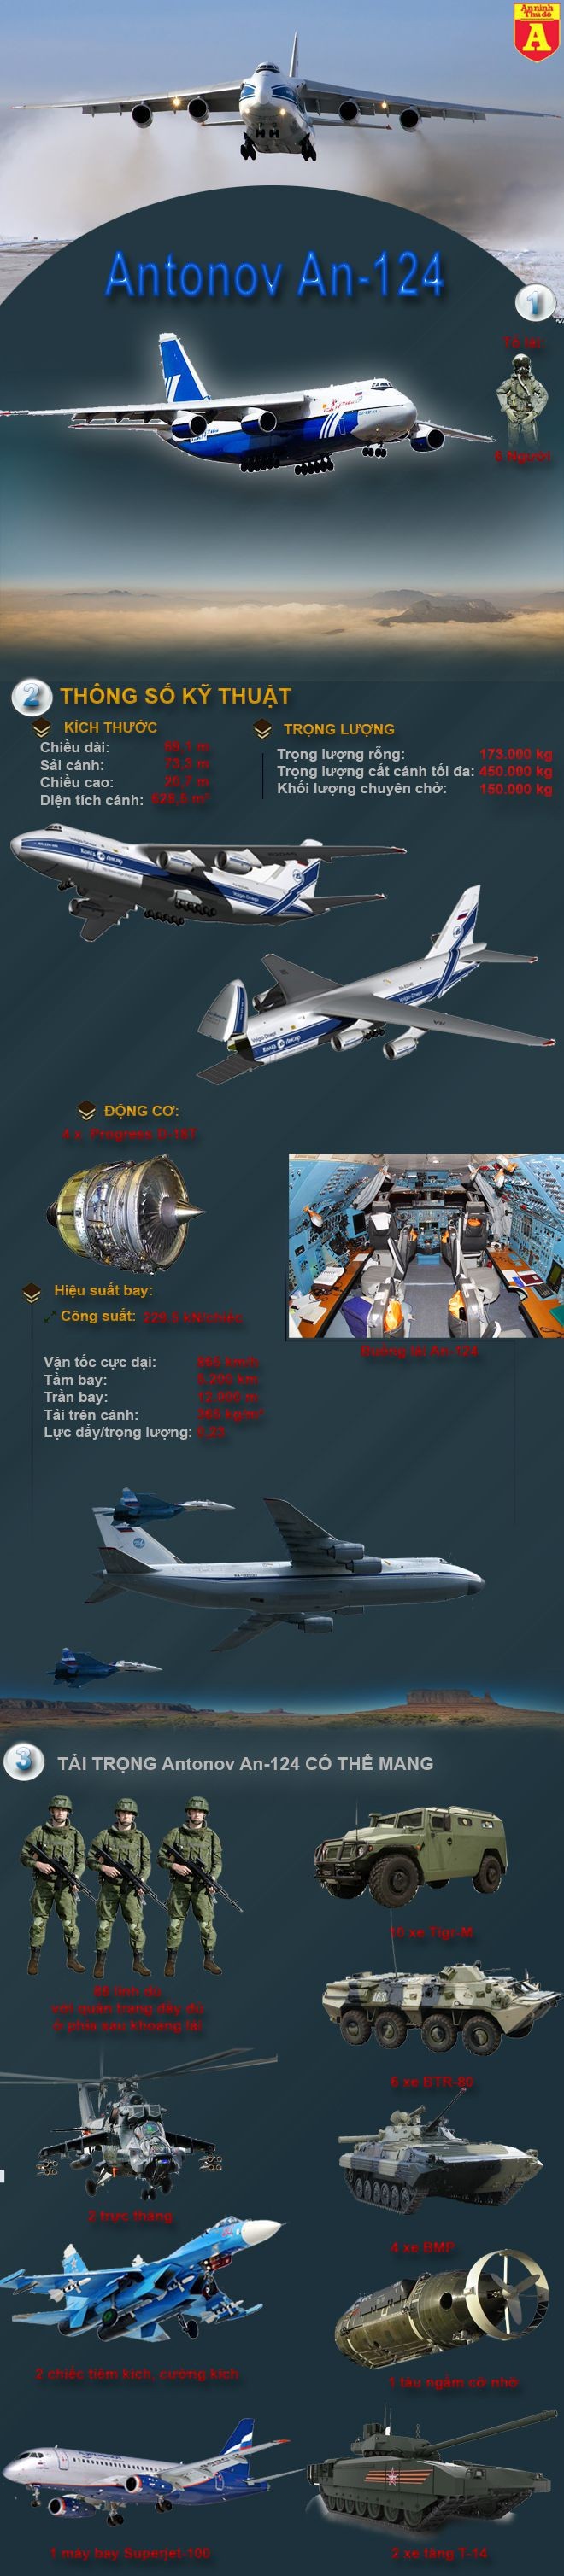 [Infographic] Uy lực của vận tải cơ khổng lồ An-124, niềm tự hào của không quân Nga ảnh 2